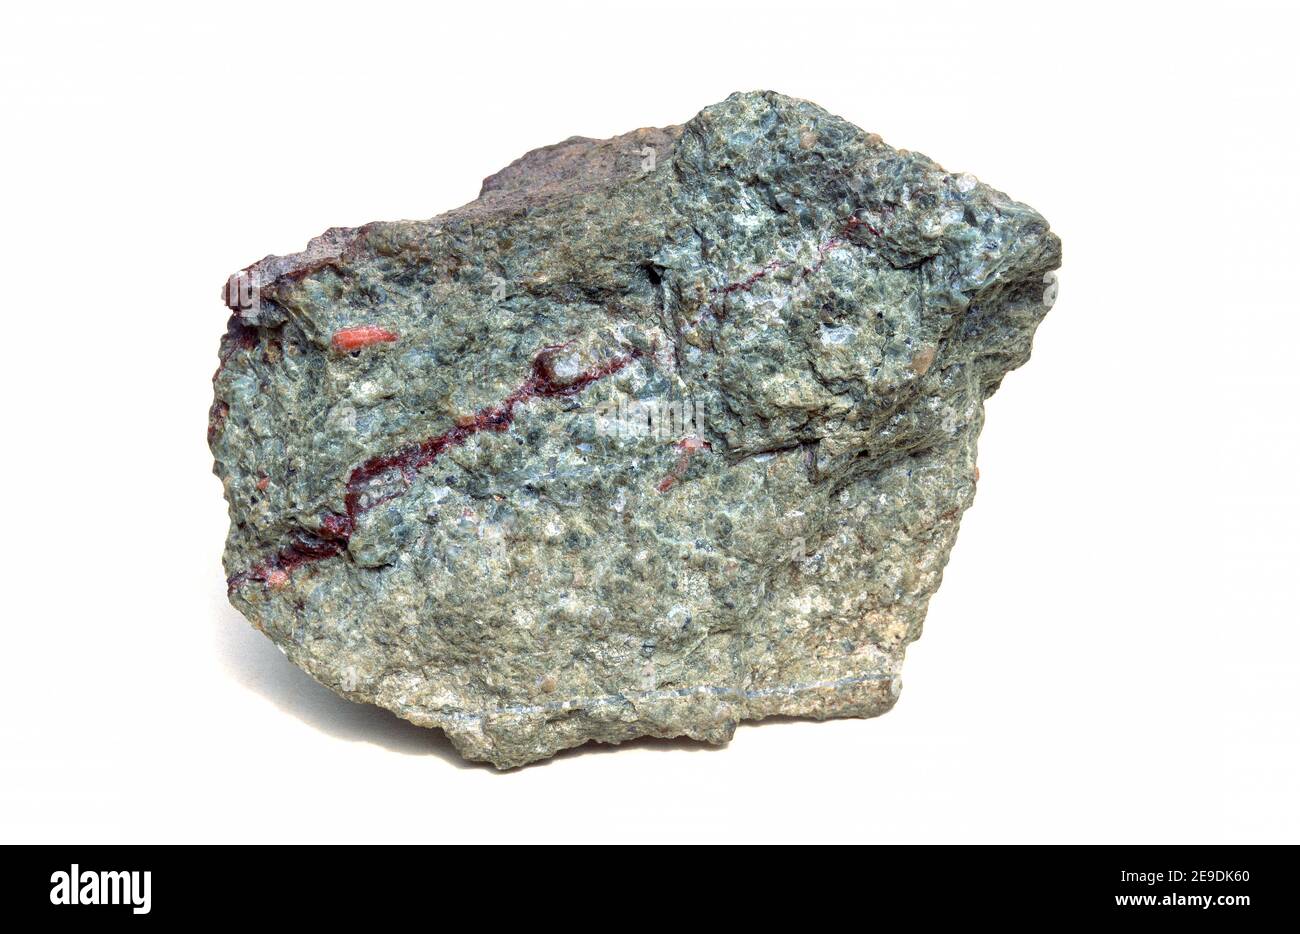 Rhyolit ist ein vulkanisches Gestein, das reich an Kieselsäure ist. Probe. Stockfoto